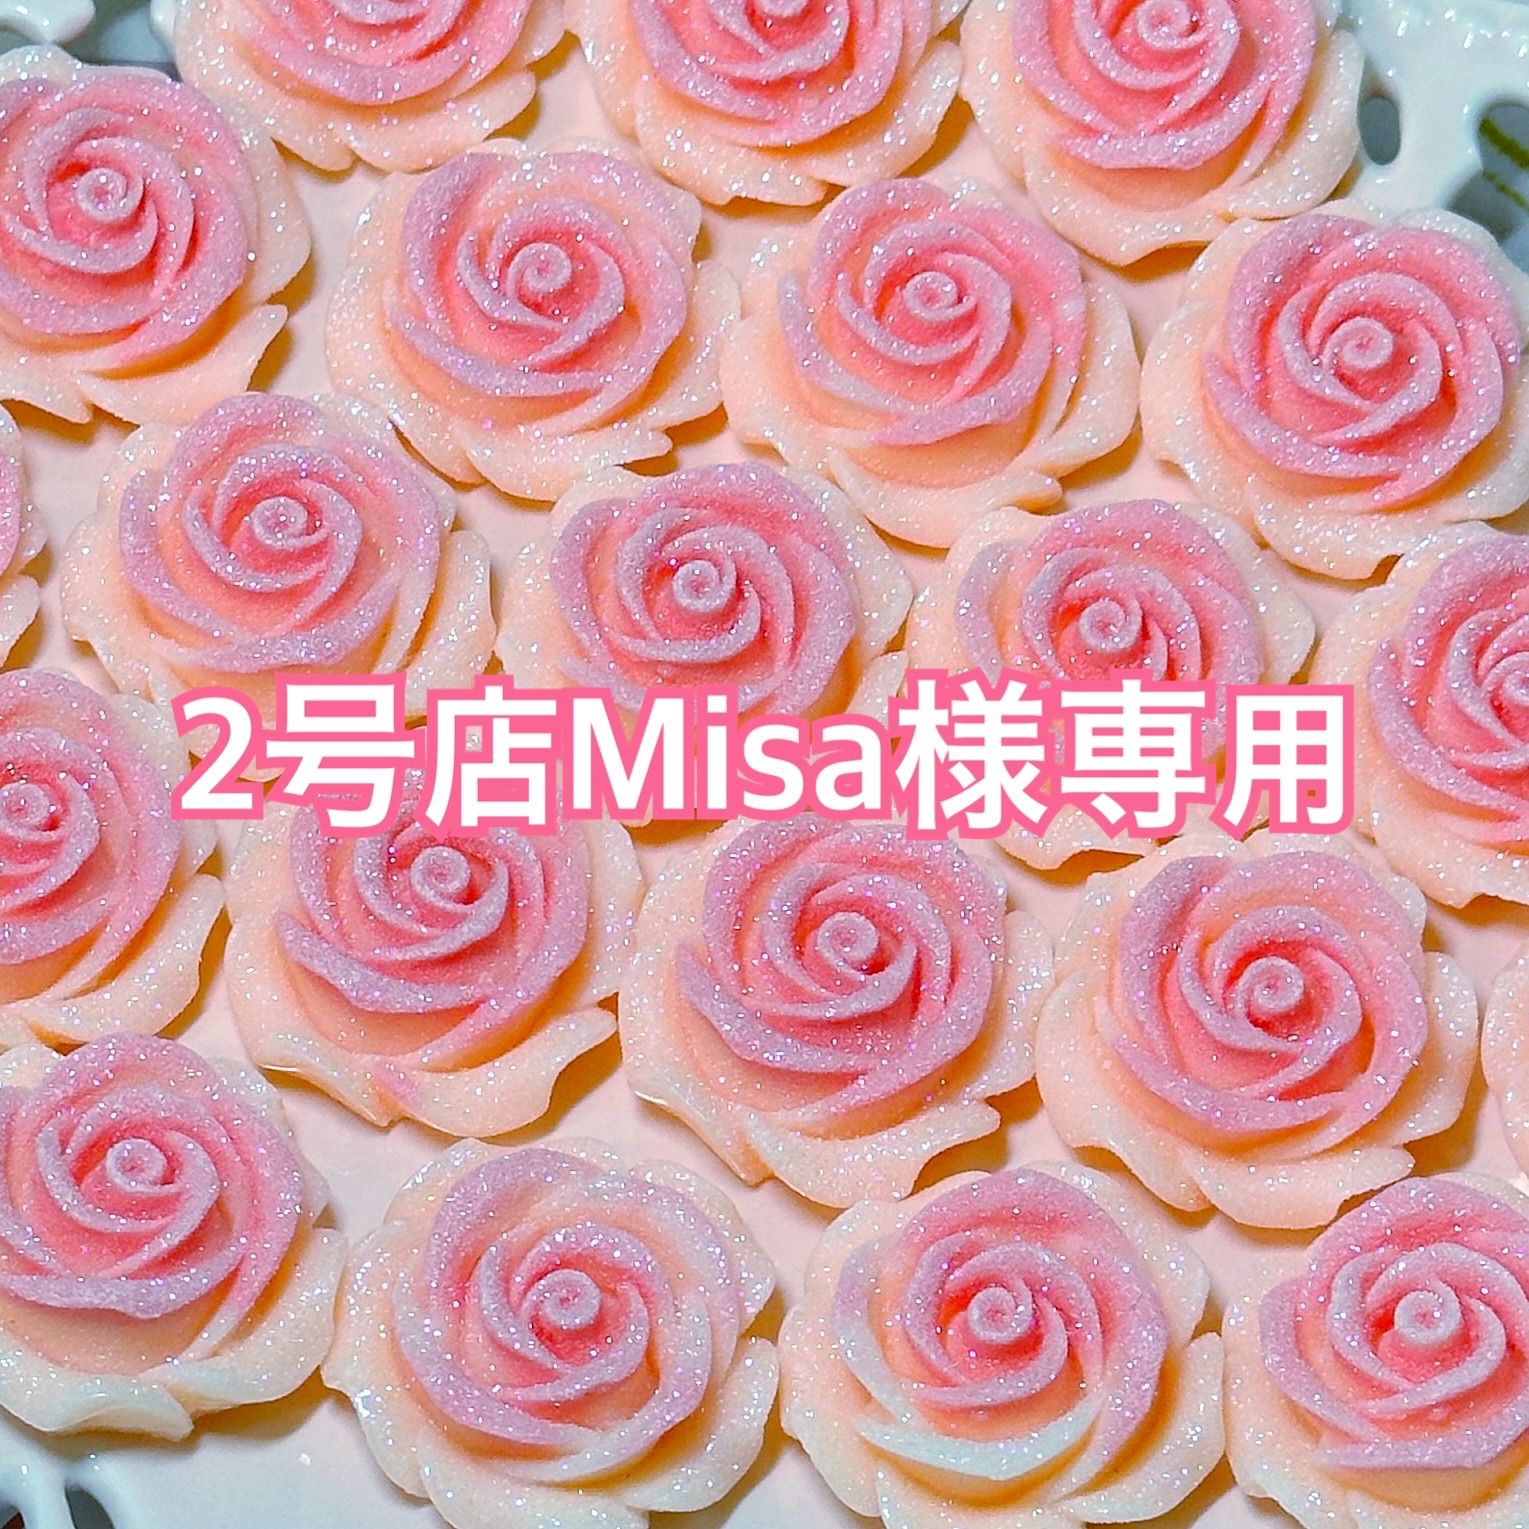 Misa様専用2号店 - メルカリ